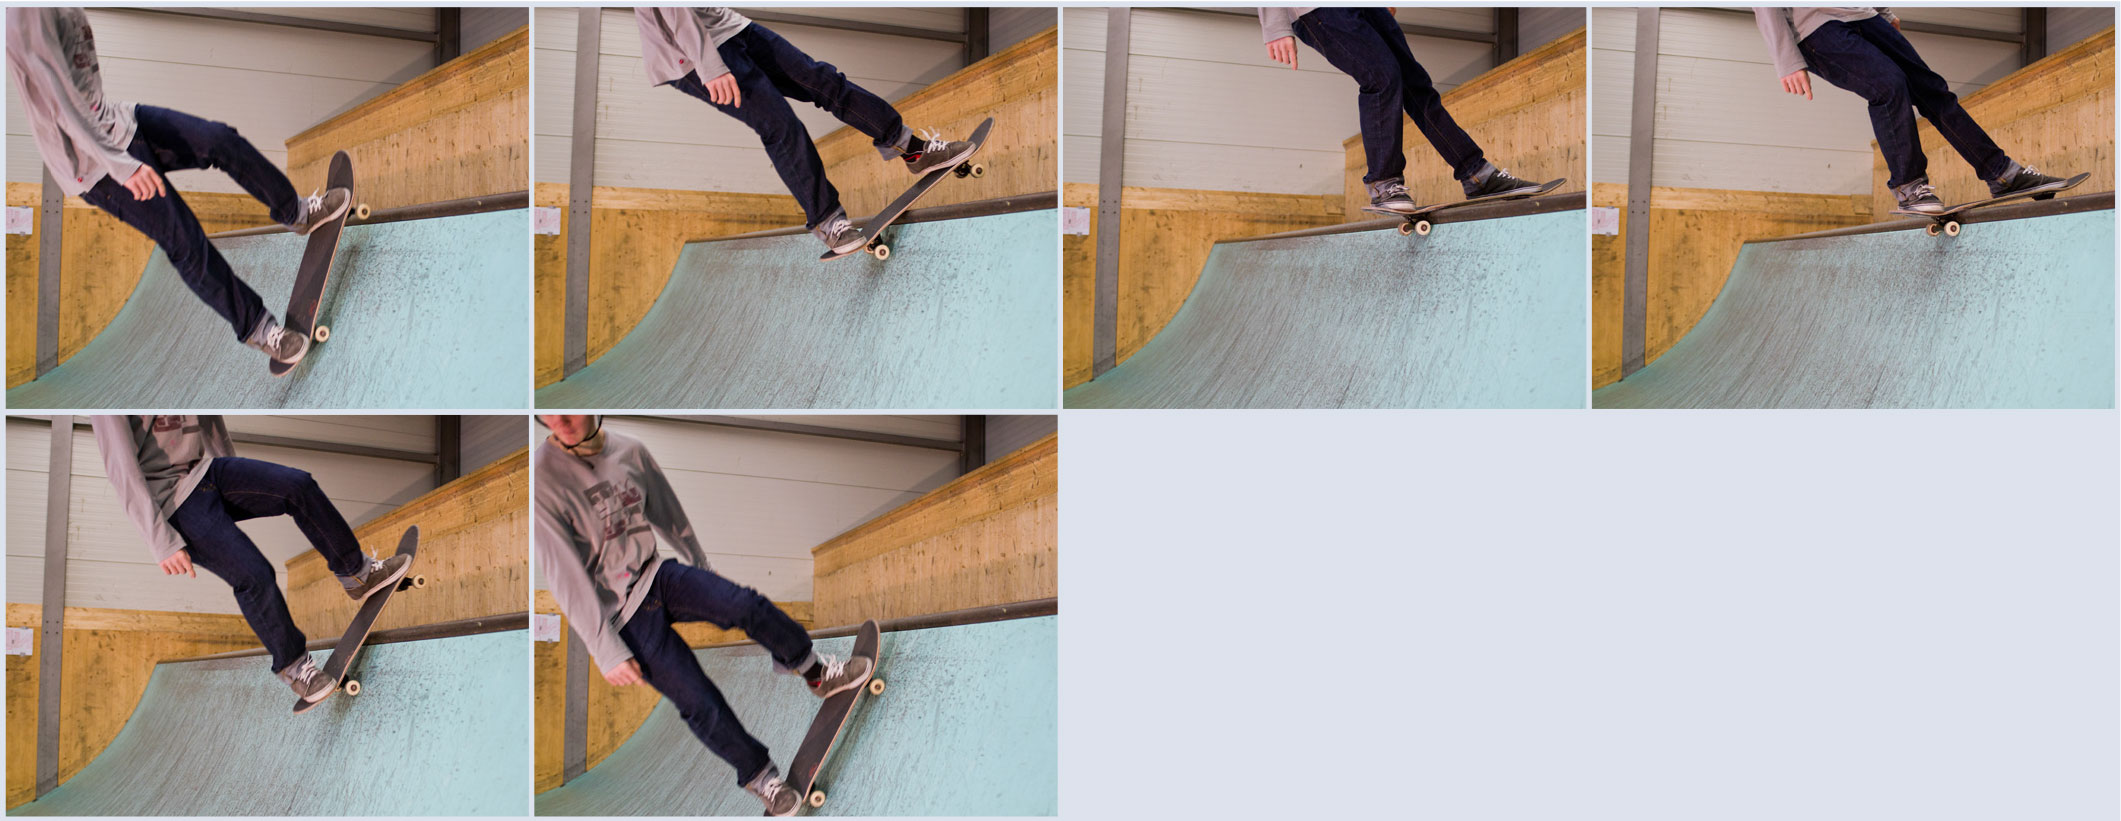 Skateboard – Mini-rampe: Rock to fakie »